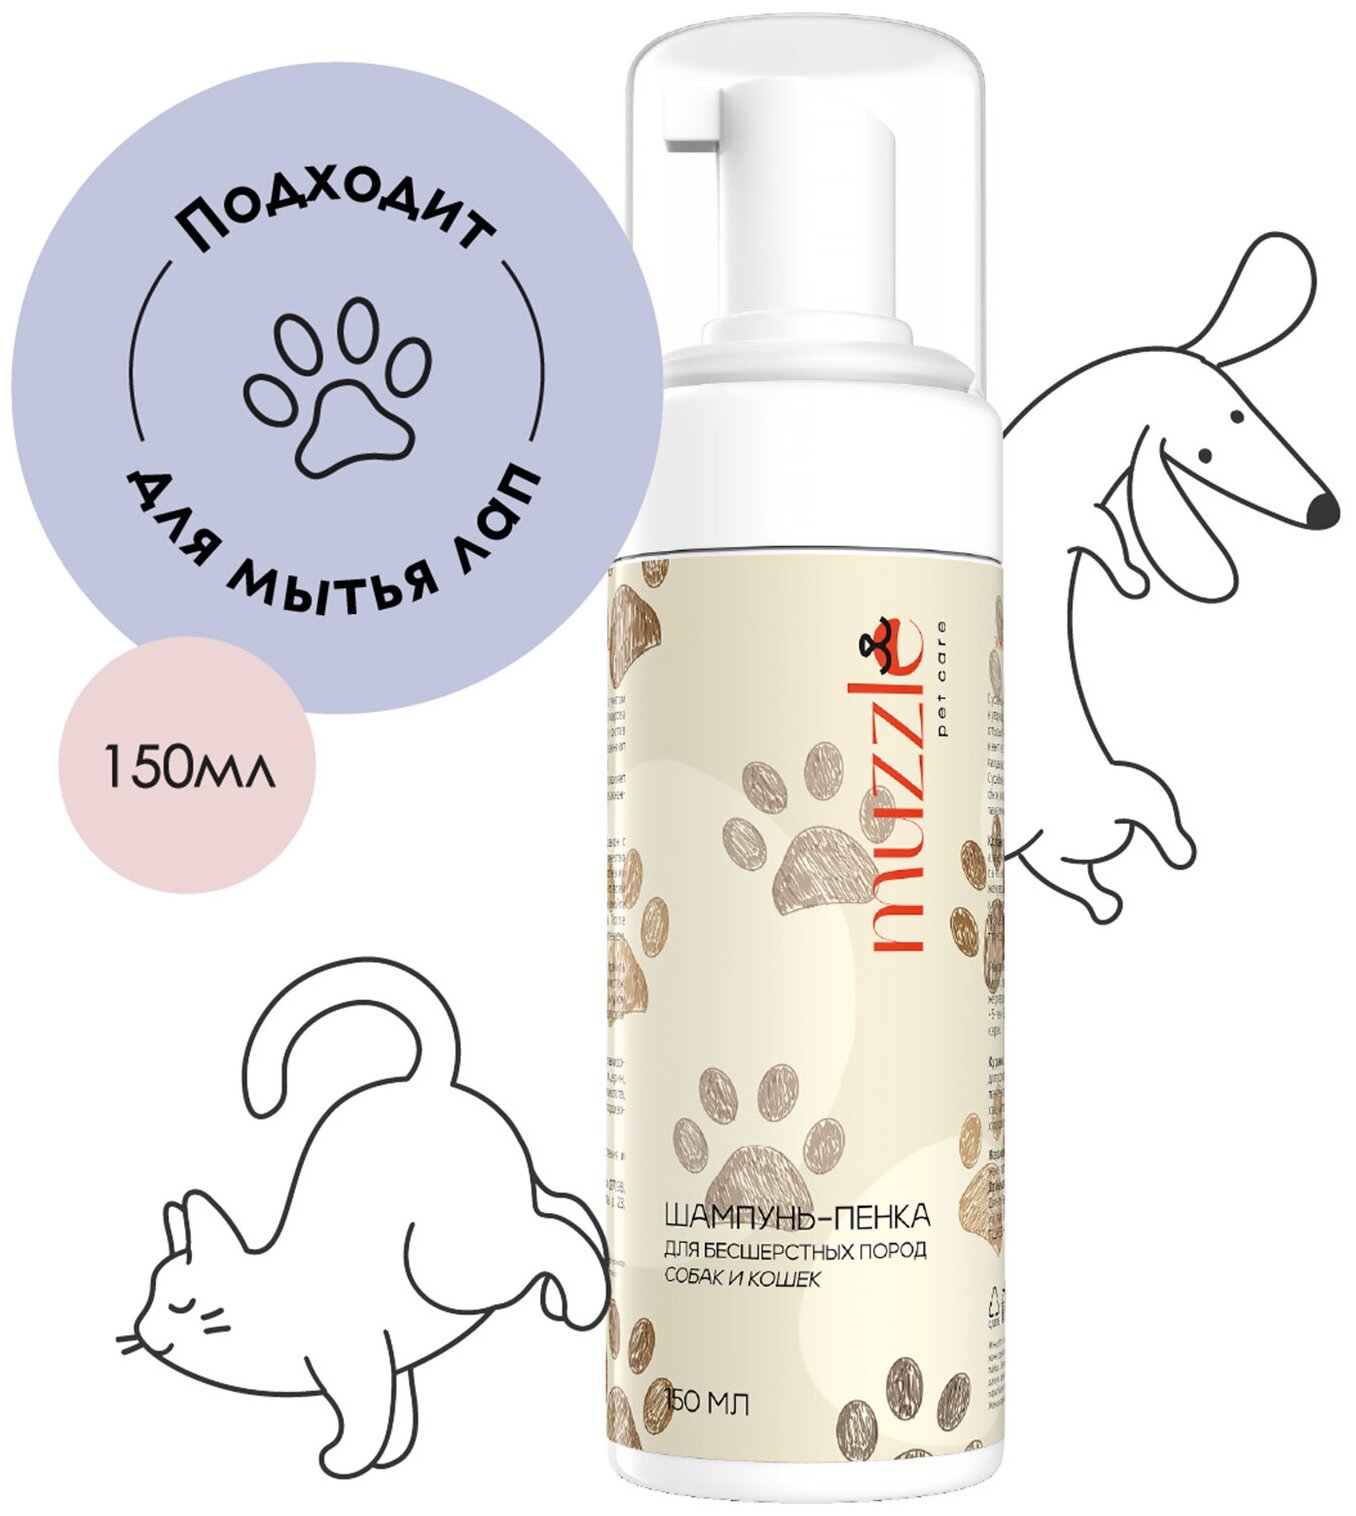 Шампунь-пенка Muzzle для мытья лап животных после прогулки, универсальный шампунь пенка для бесшерстных пород собак и кошек, 150 мл